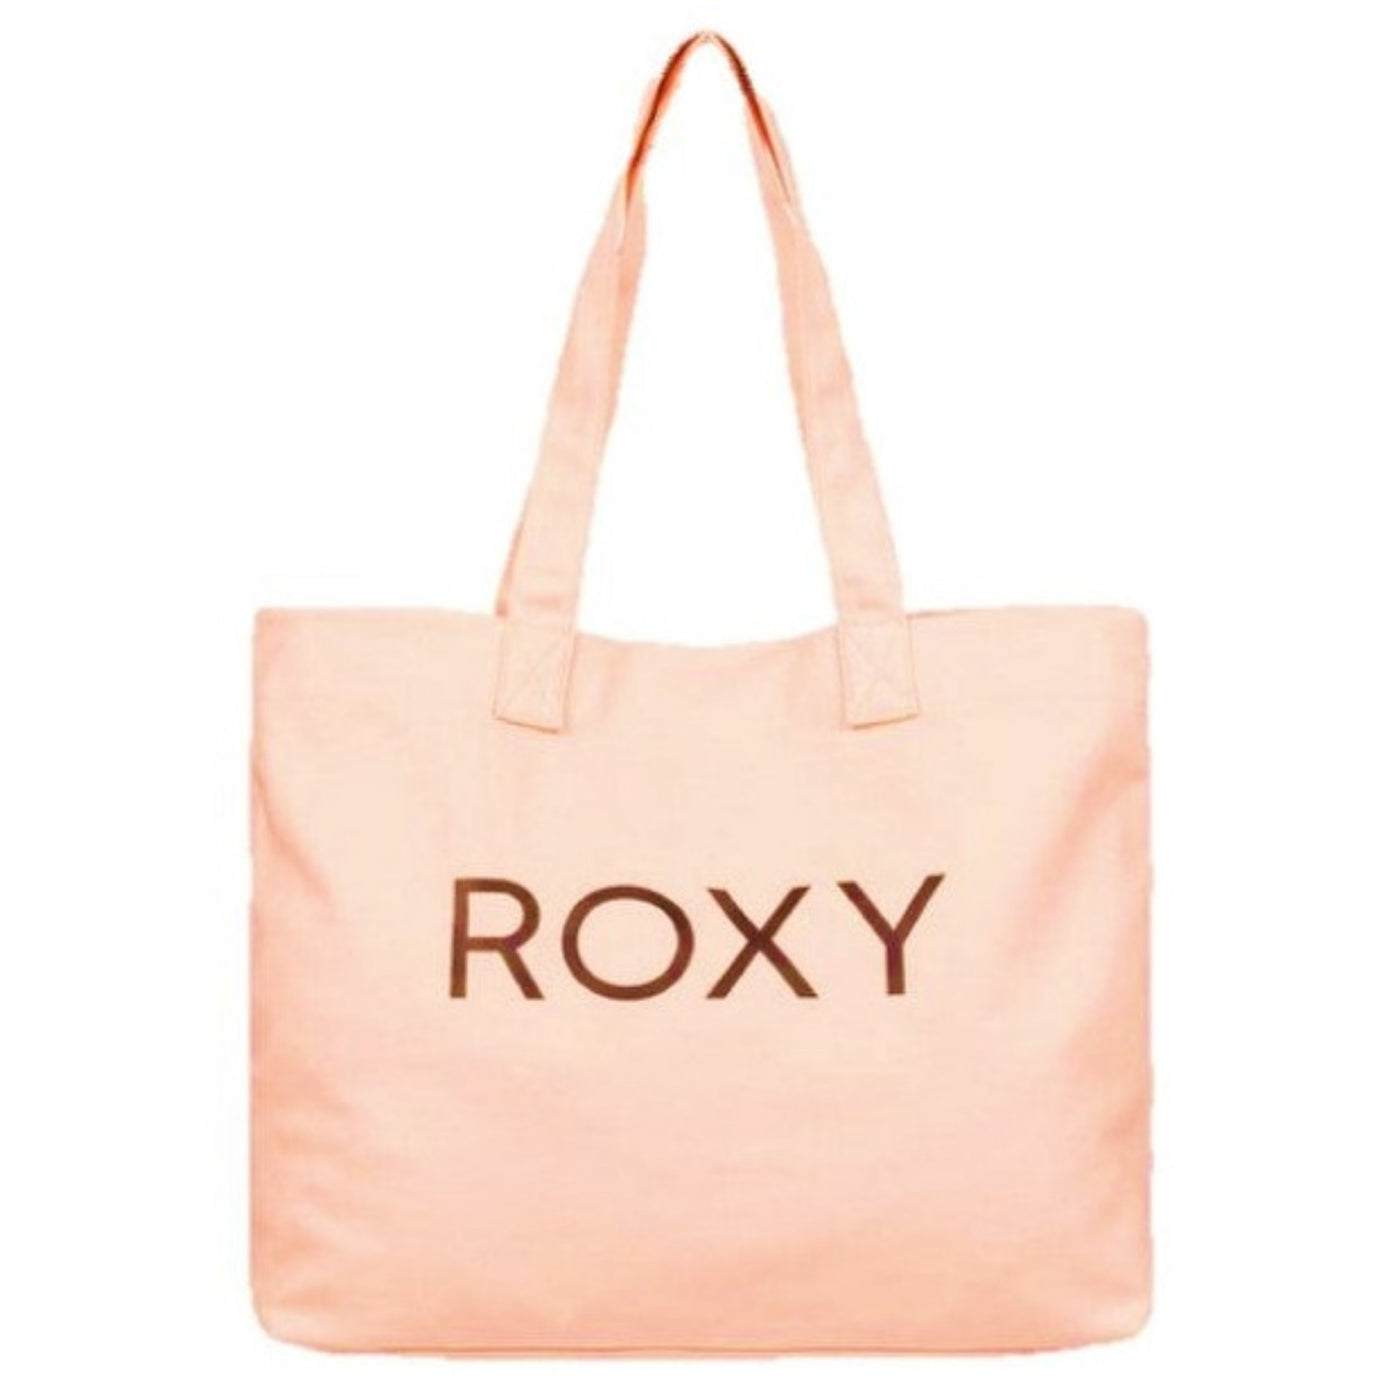 Roxy Go For It Tote Bag - Peach